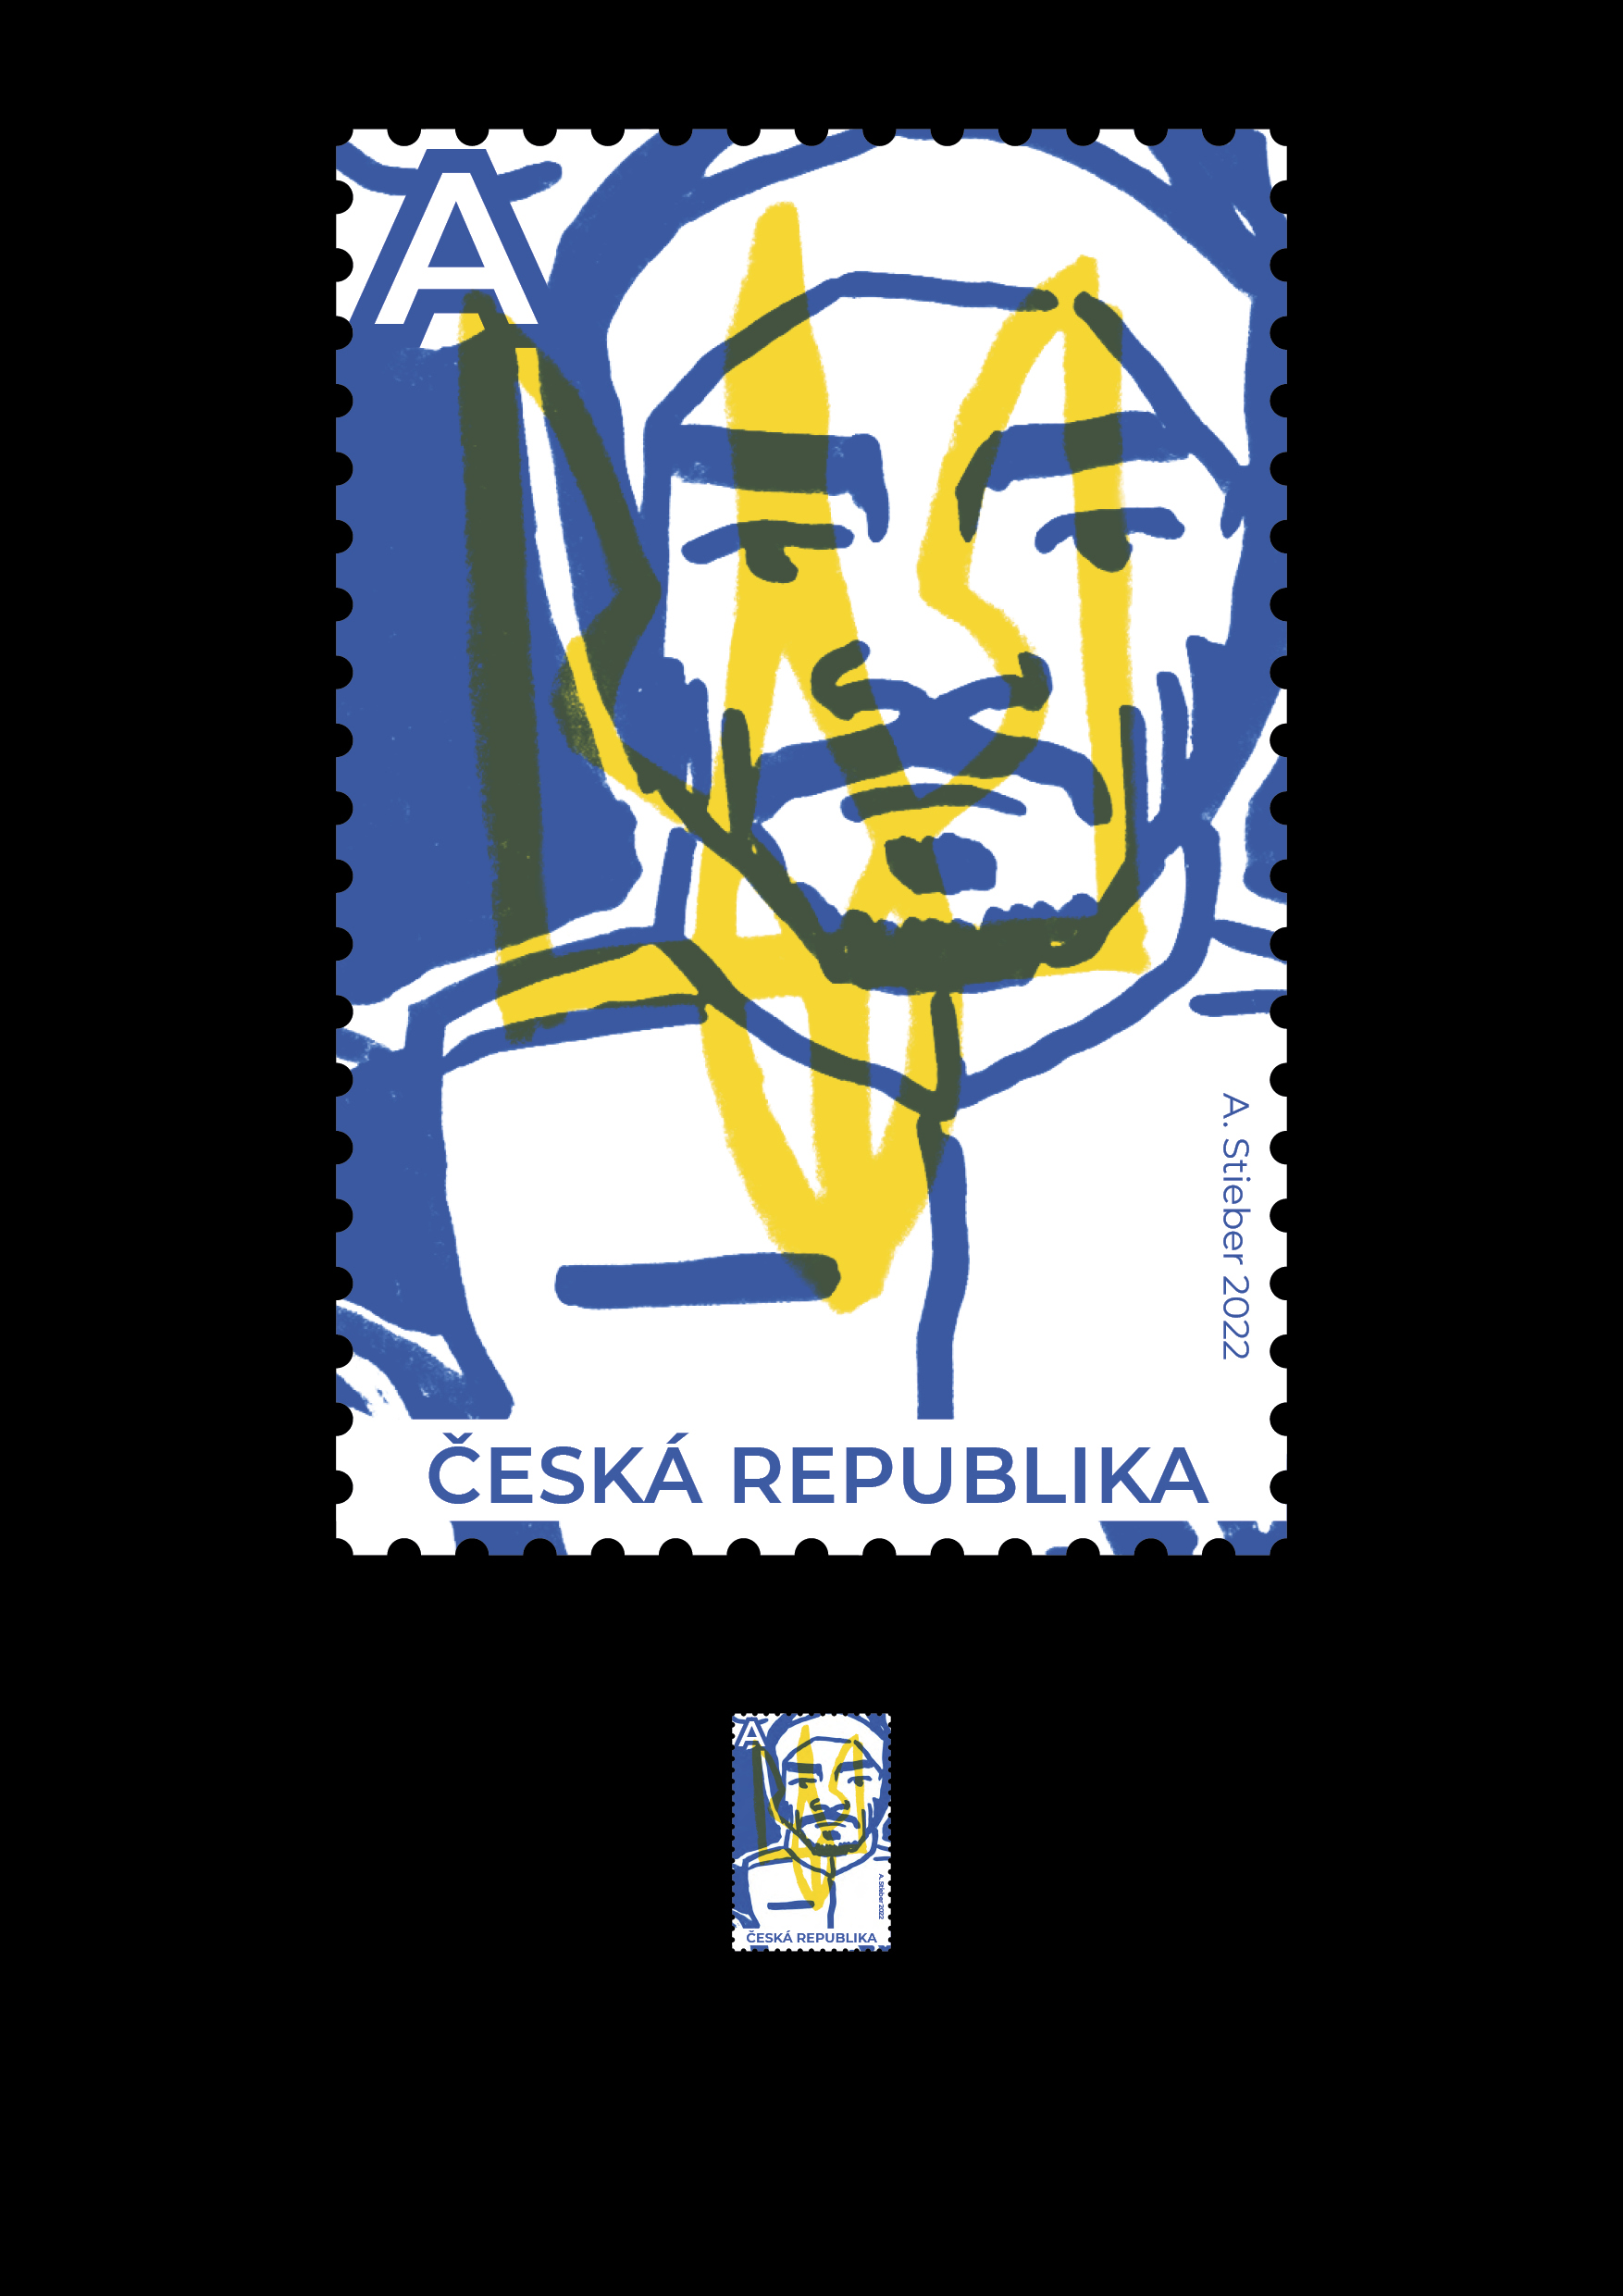 poštovní známka <br> na podporu Ukrajiny<br> 1. ročník 2021/2022<br> semestrální práce